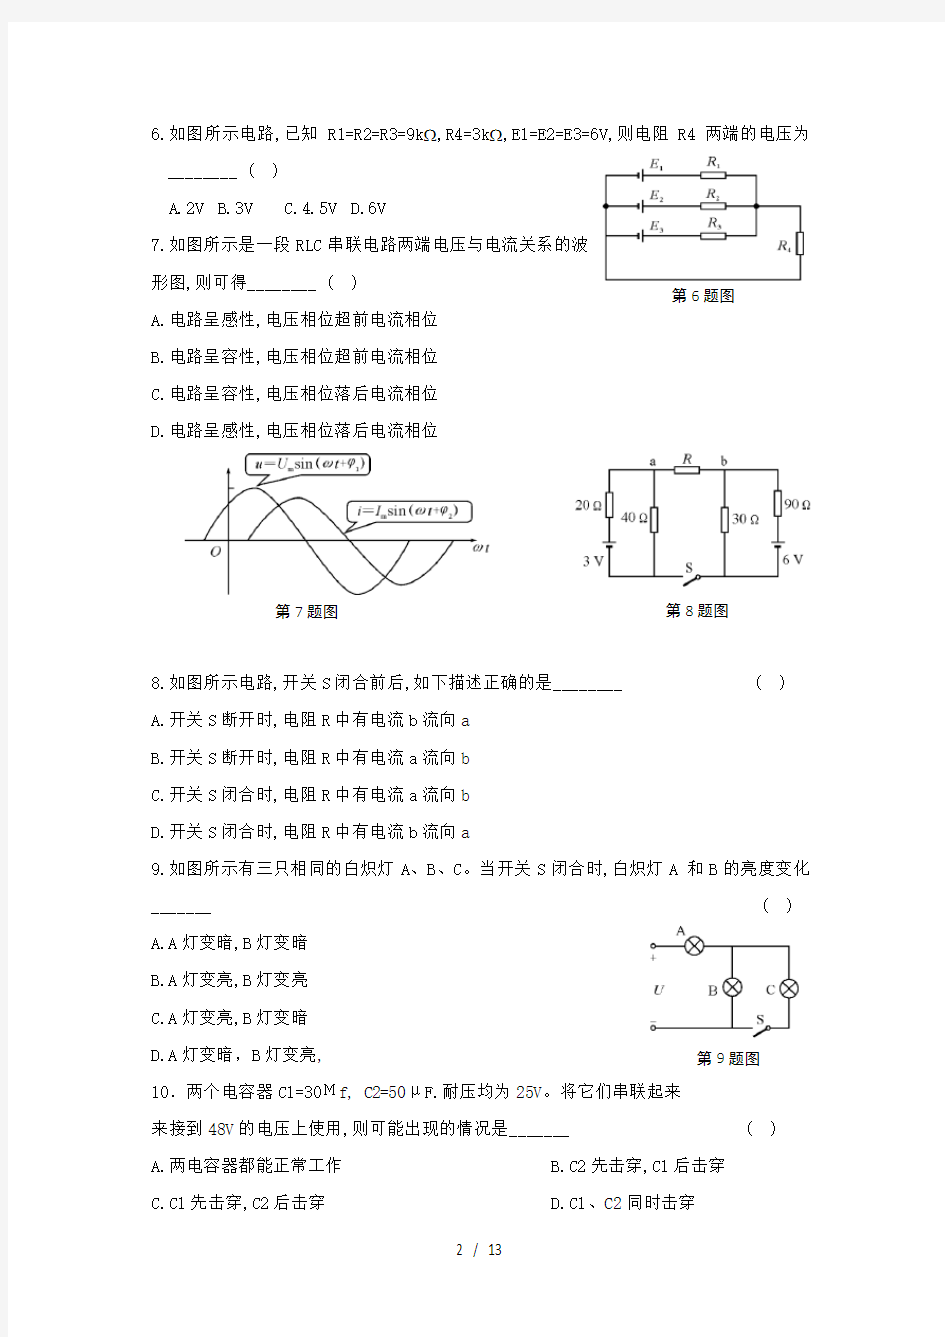 2017年浙江省高等职业技术教育招生考试电子电工试卷